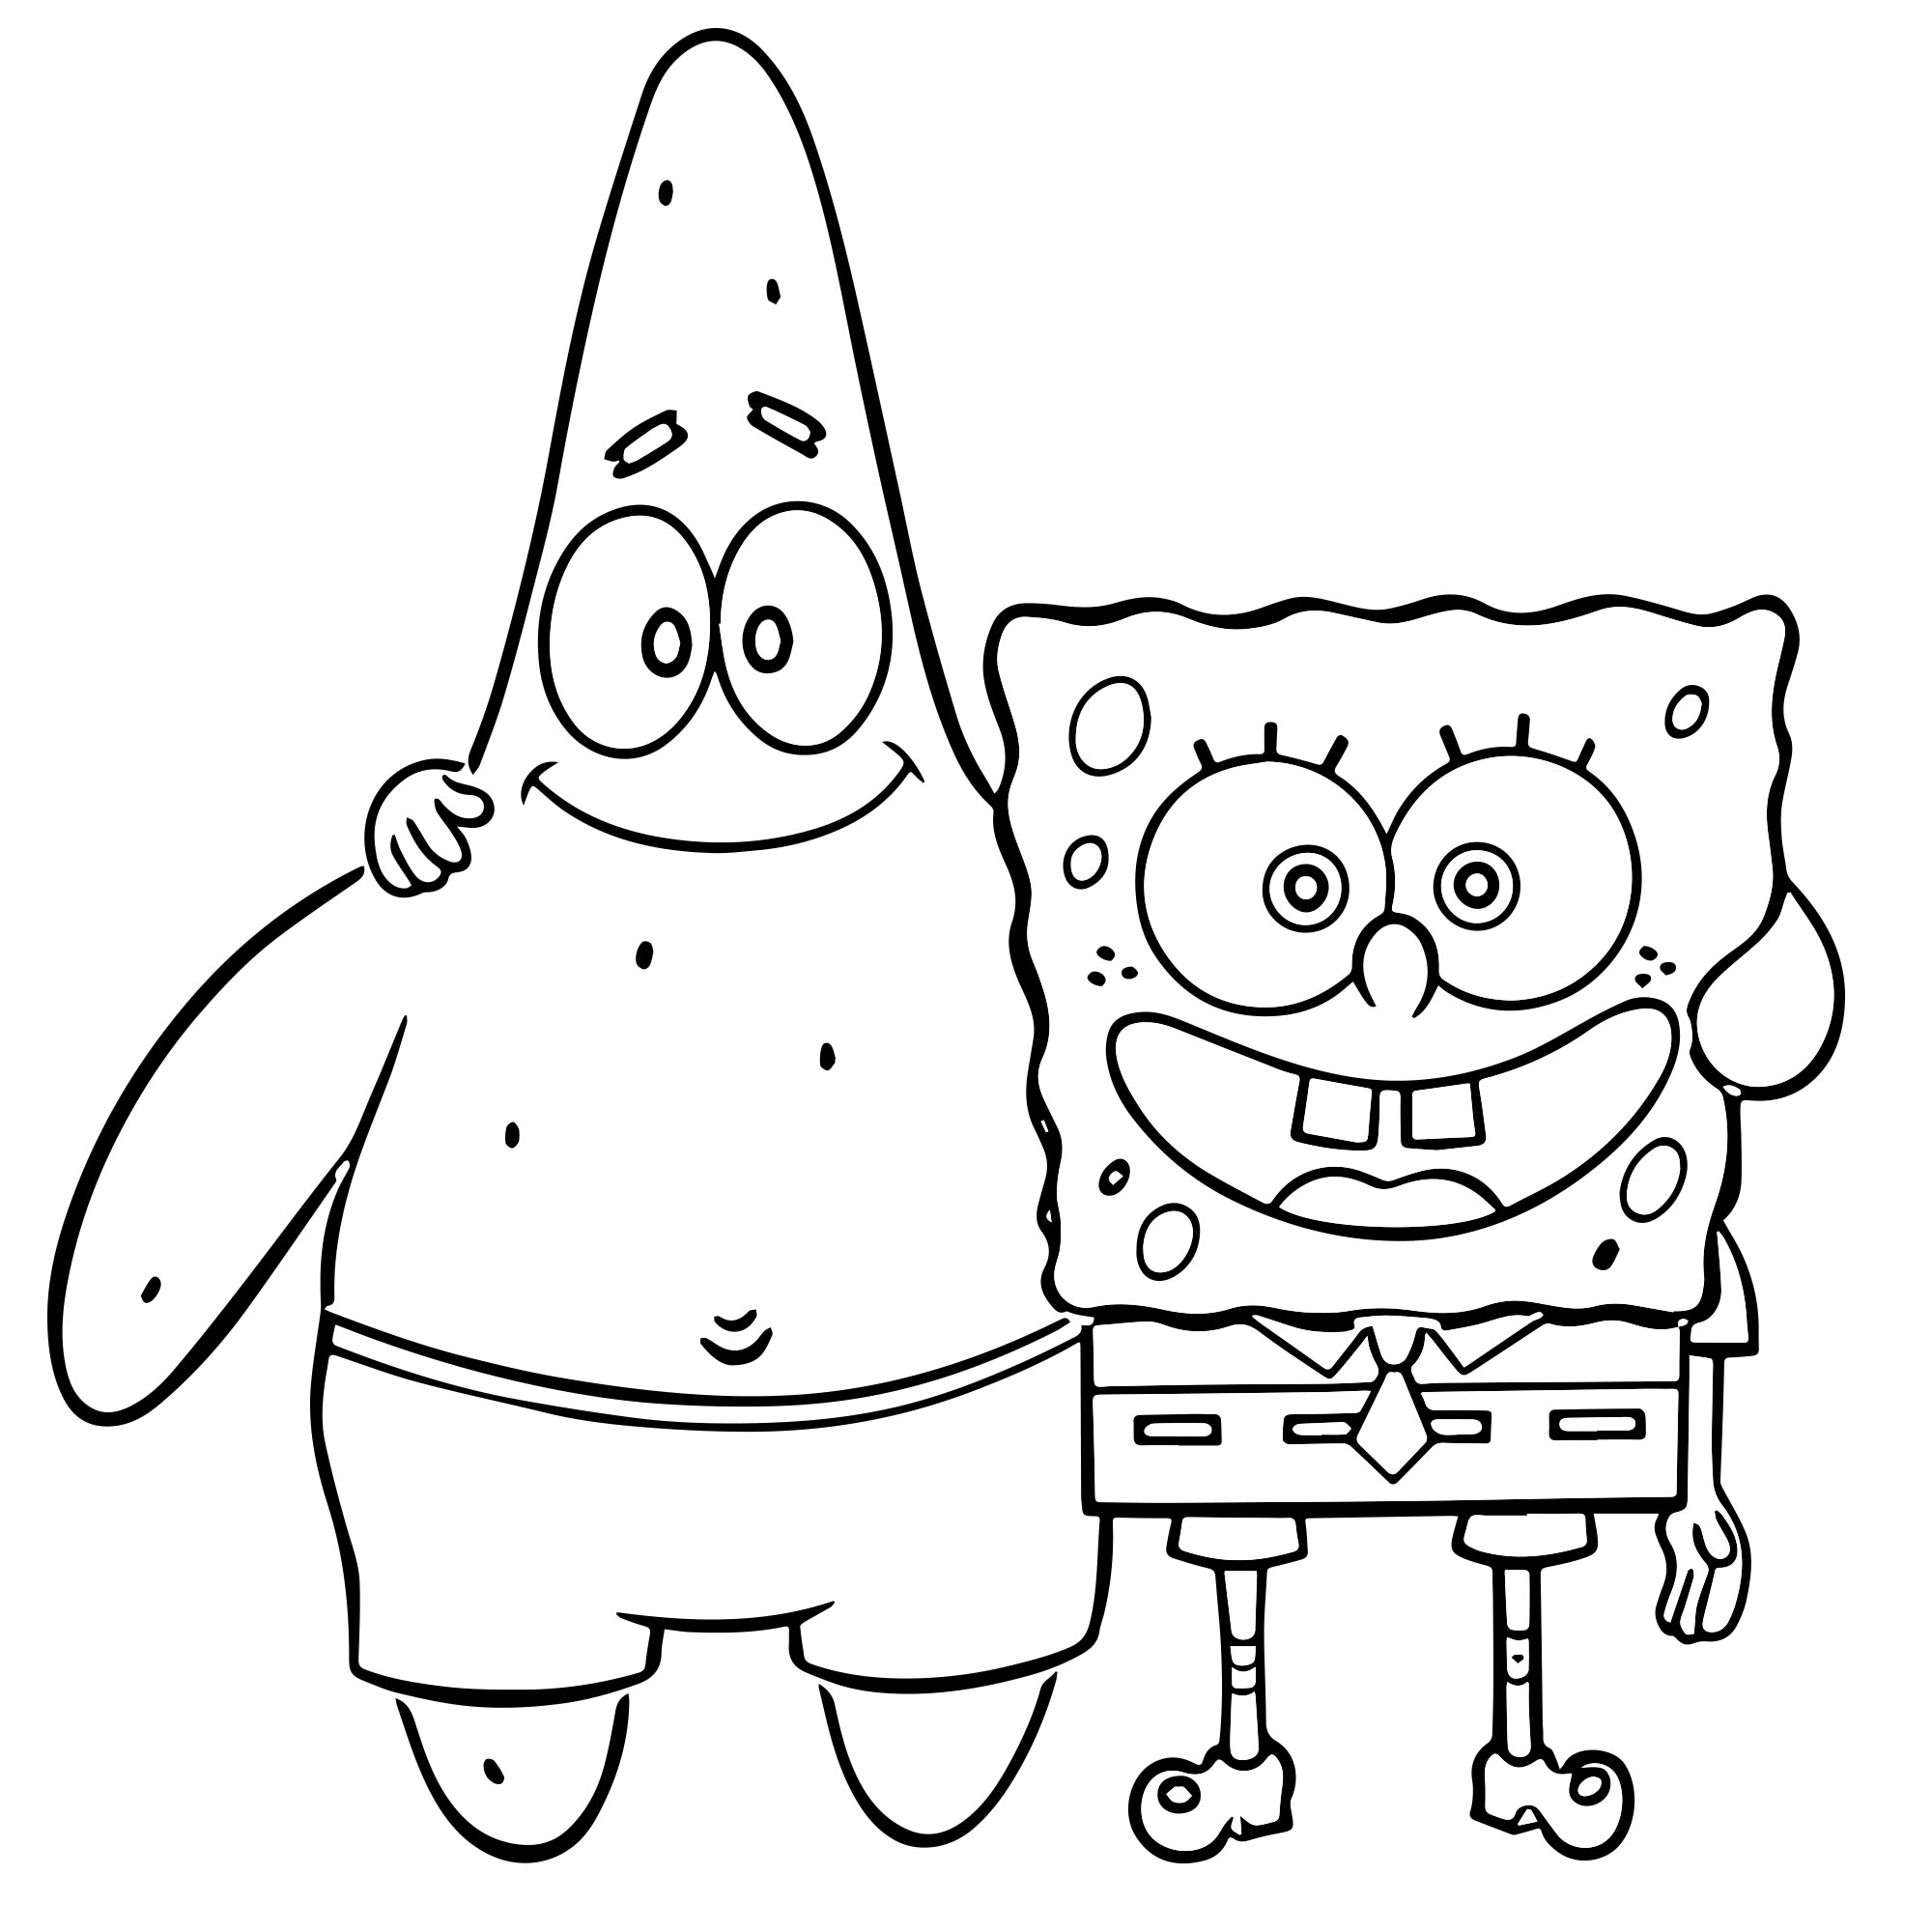 Раскраски из мультфильма Губка Боб Квадратные штаны (Sponge Bob Squarepants)